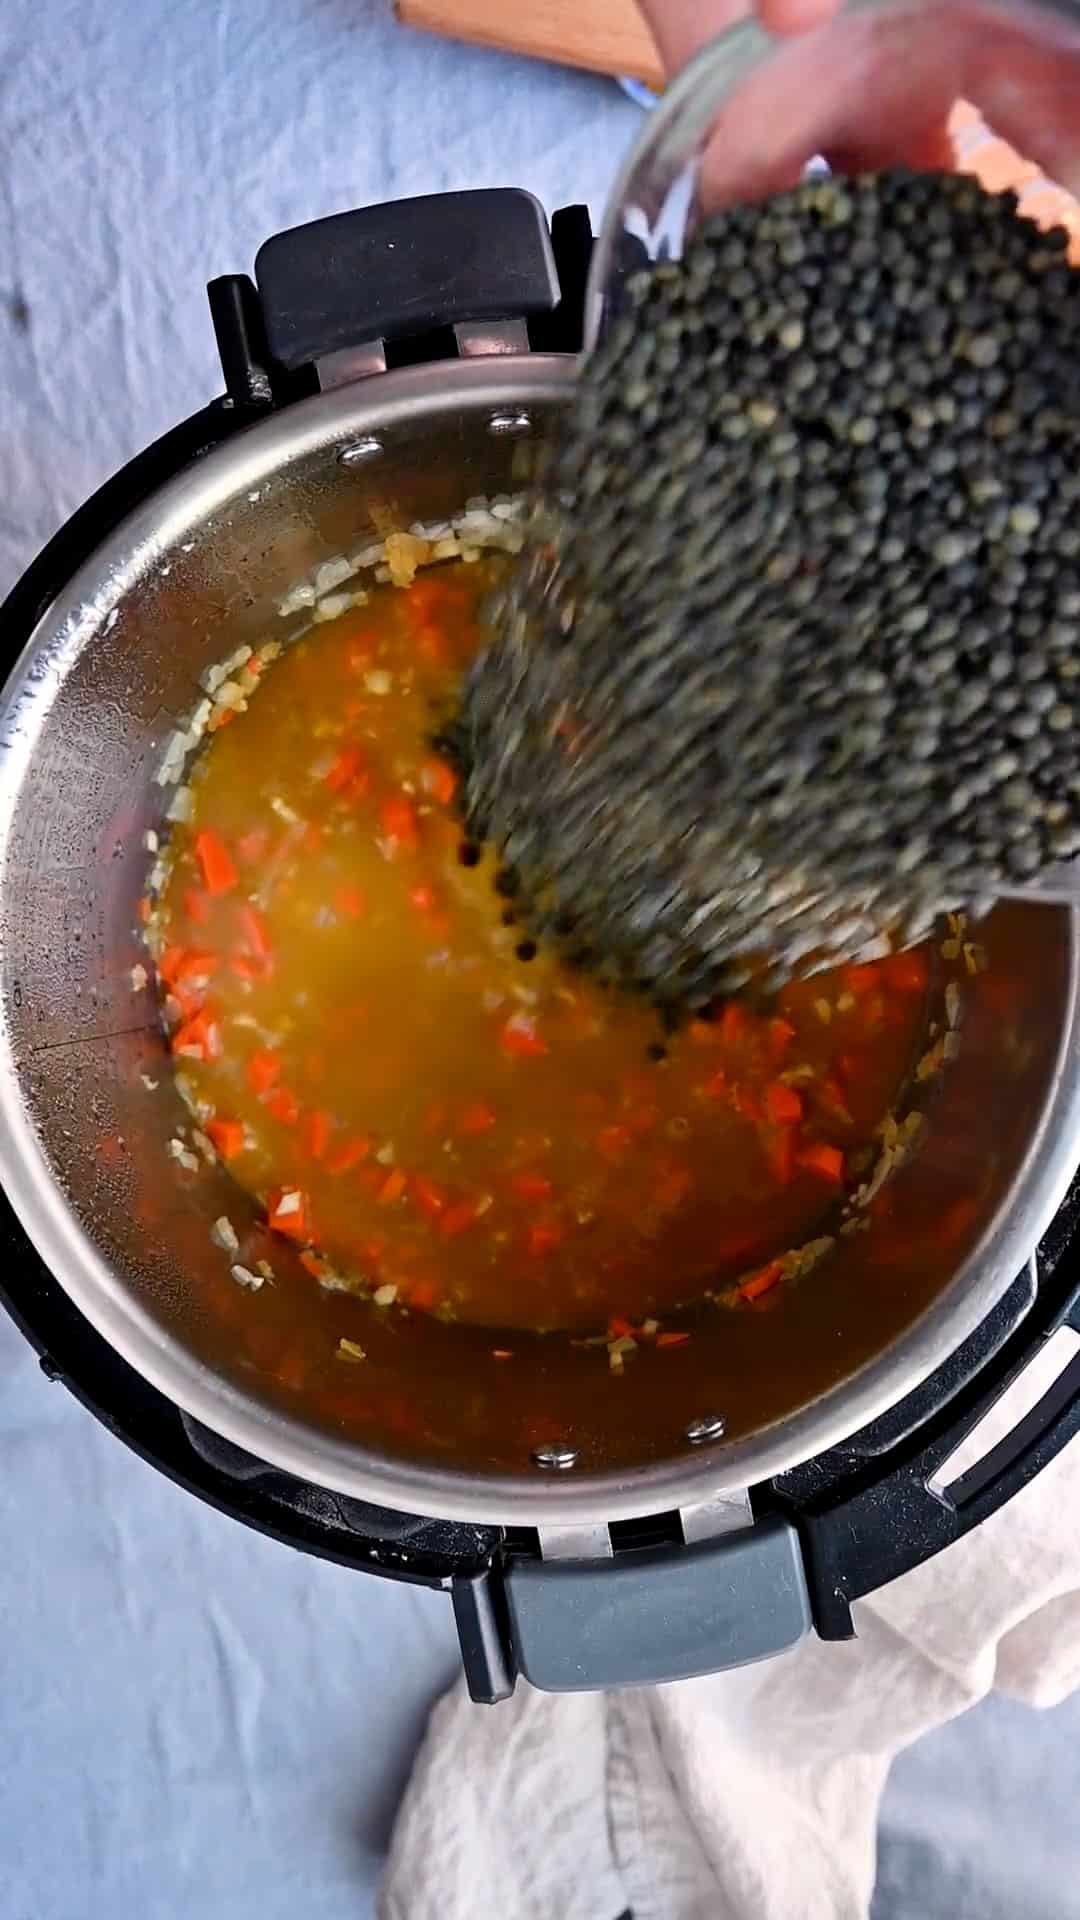 https://rainbowplantlife.com/wp-content/uploads/2022/01/ip-lentil-soup-gws-4-poster.jpeg